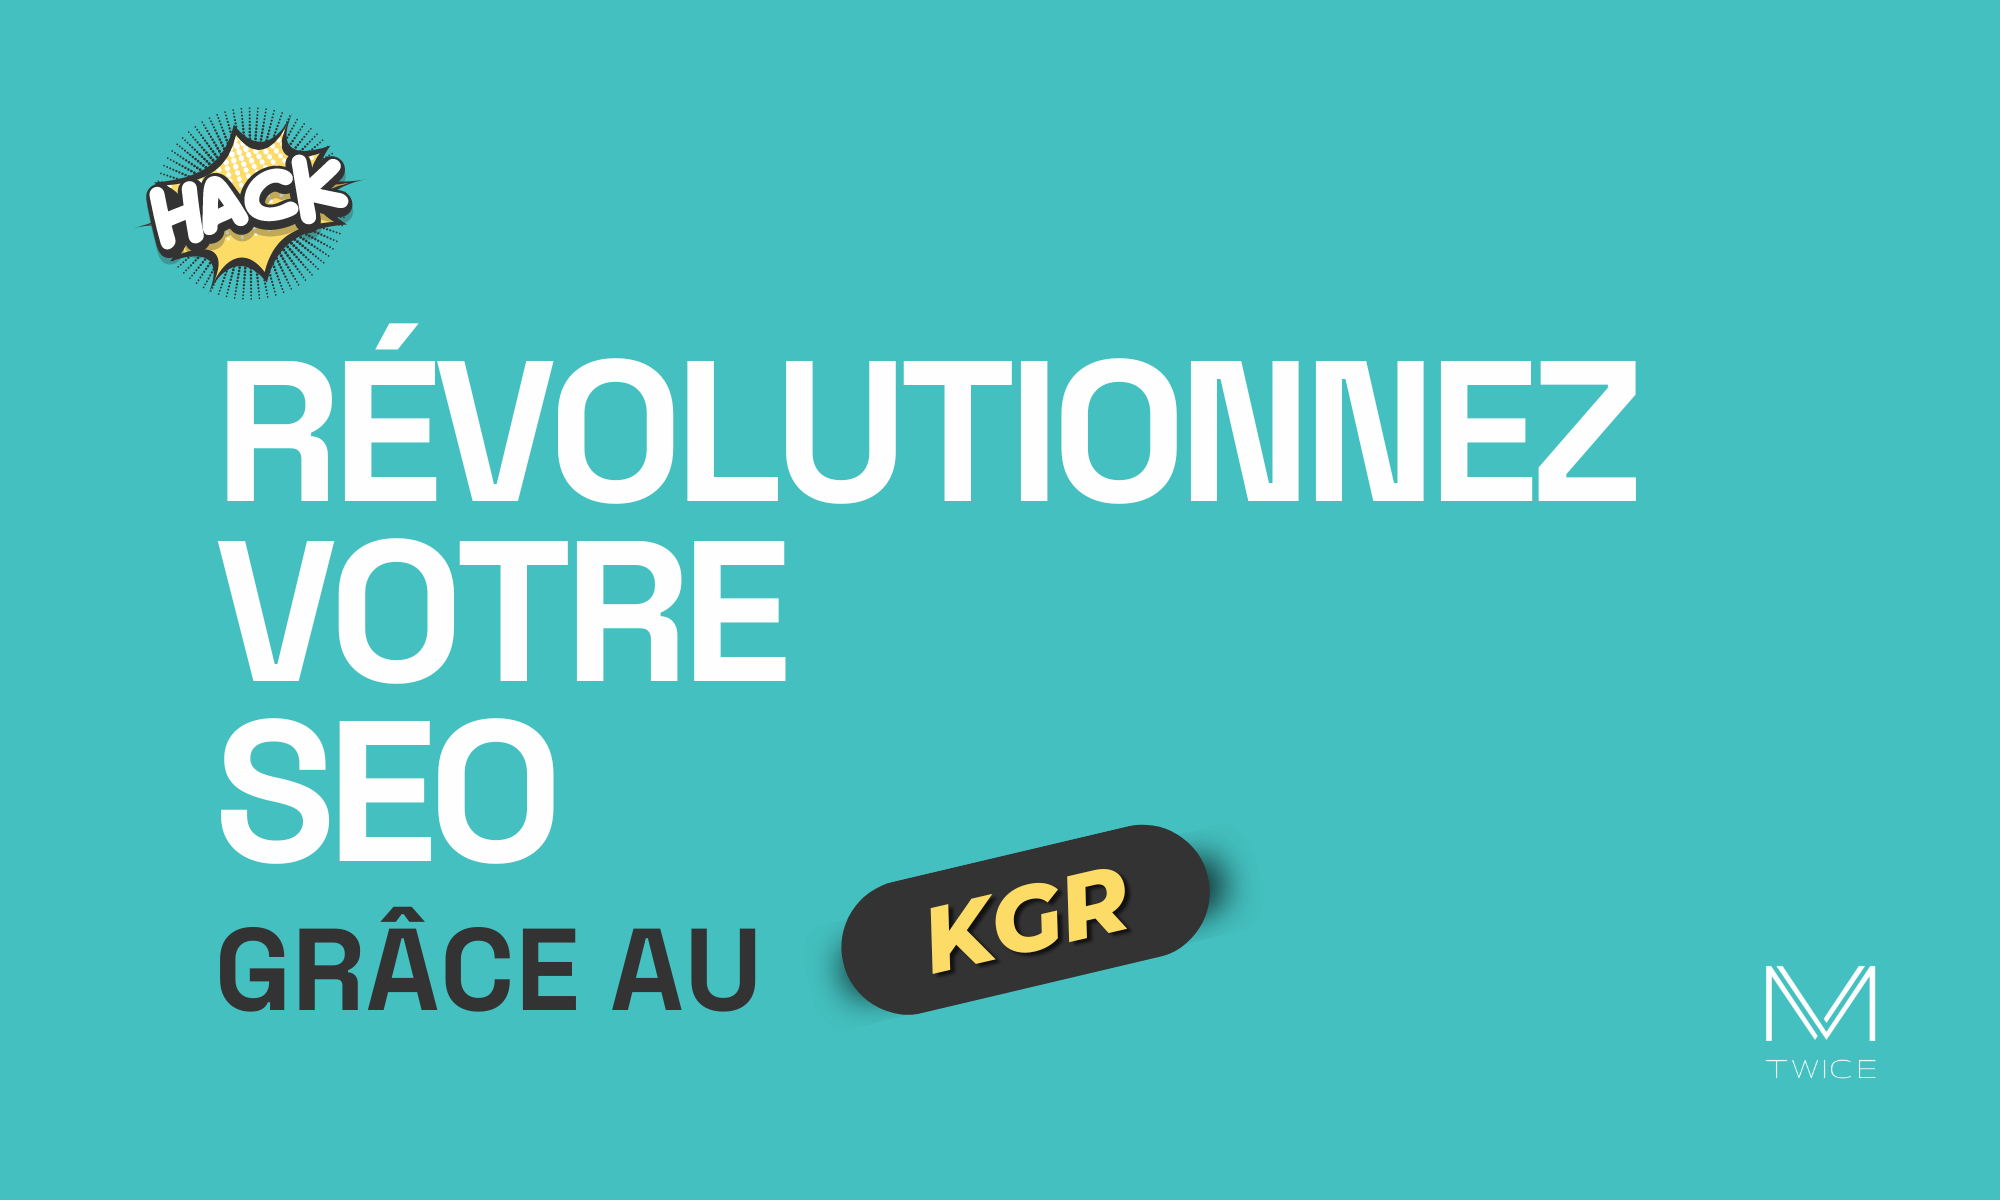 Image en vedette avec un fond turquoise et un texte en français qui dit : ‘Révolutionnez votre SEO grâce au KGR’ avec le mot "KGR" en jaune dans un élément dynamique noir. Le mot "HACK" dans une bulle de bande dessinée, indiquant une astuce ou une stratégie. Le logo ‘M TWICE’ est situé en bas à droite, indiquant l’entreprise ou le site web associé à ce growth hacks.